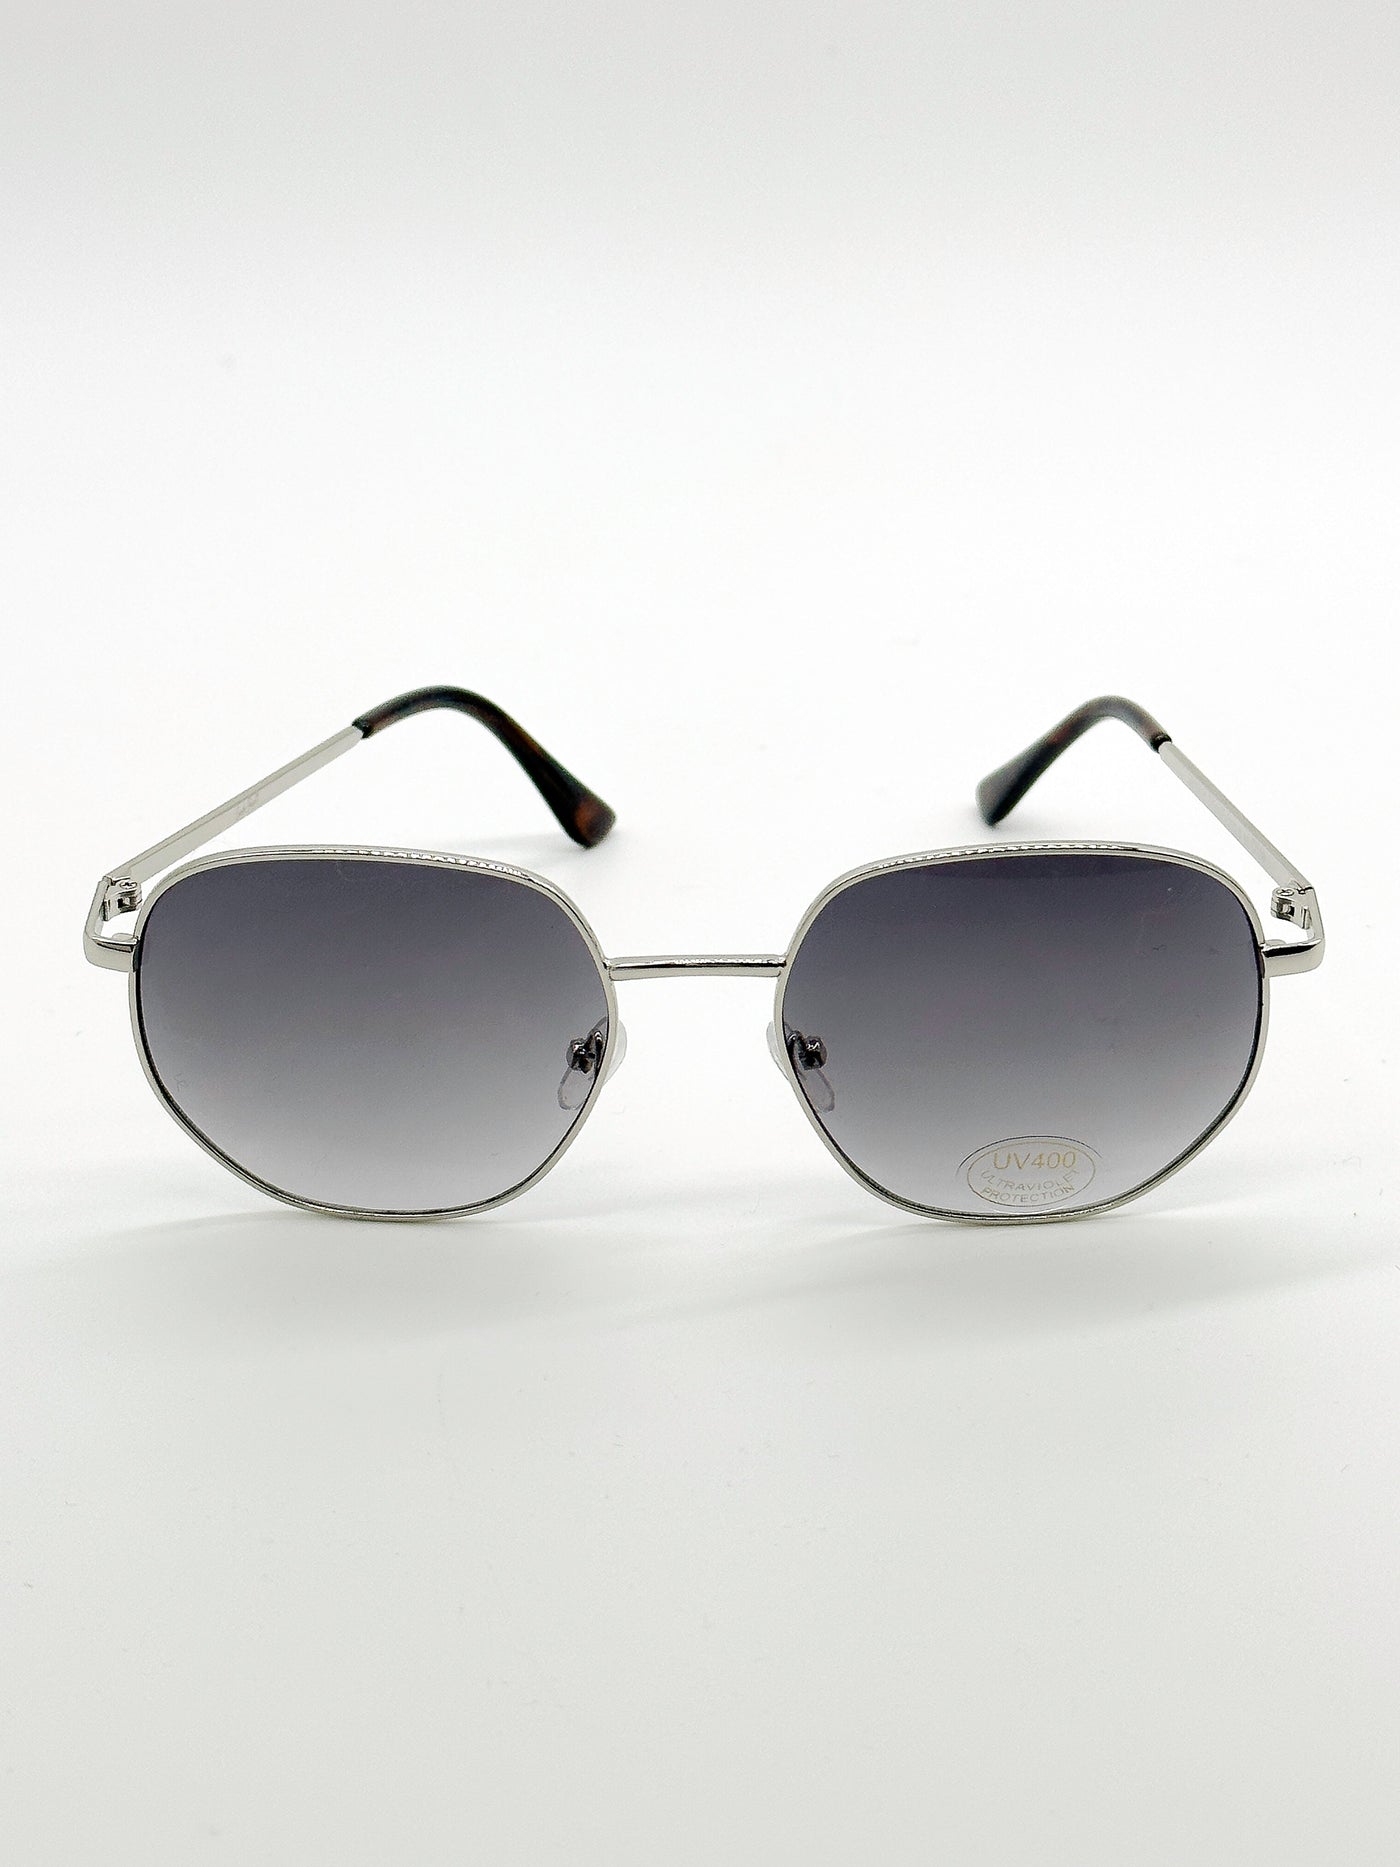 Essential Sunglasses silver aviator 